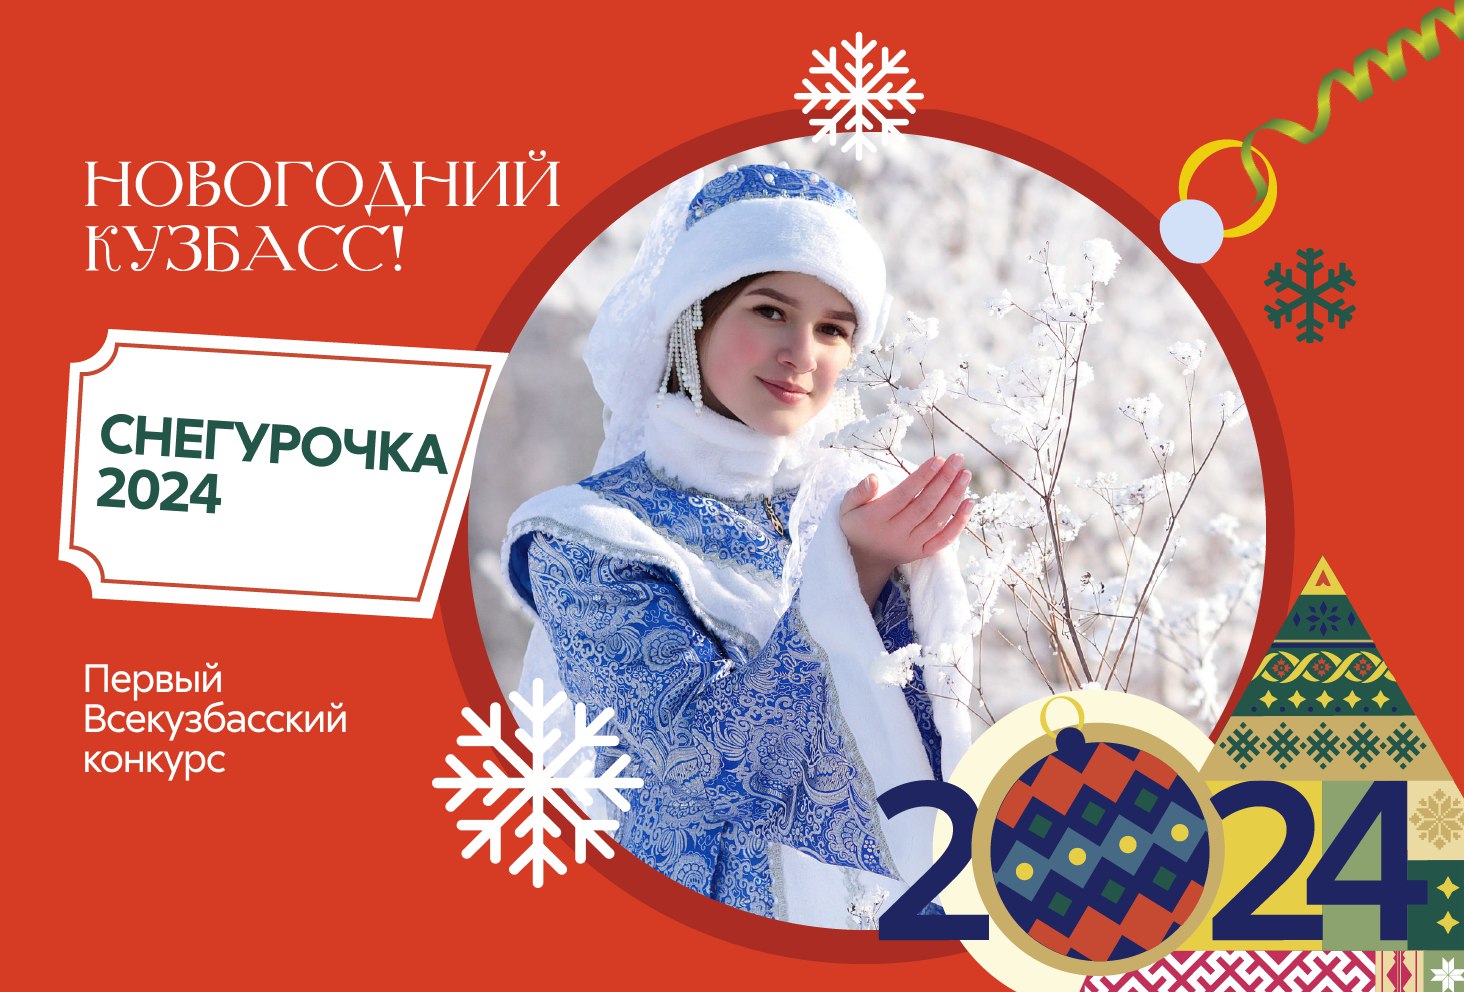 Стали известны подробности кузбасского конкурса “Снегурочка 2024”